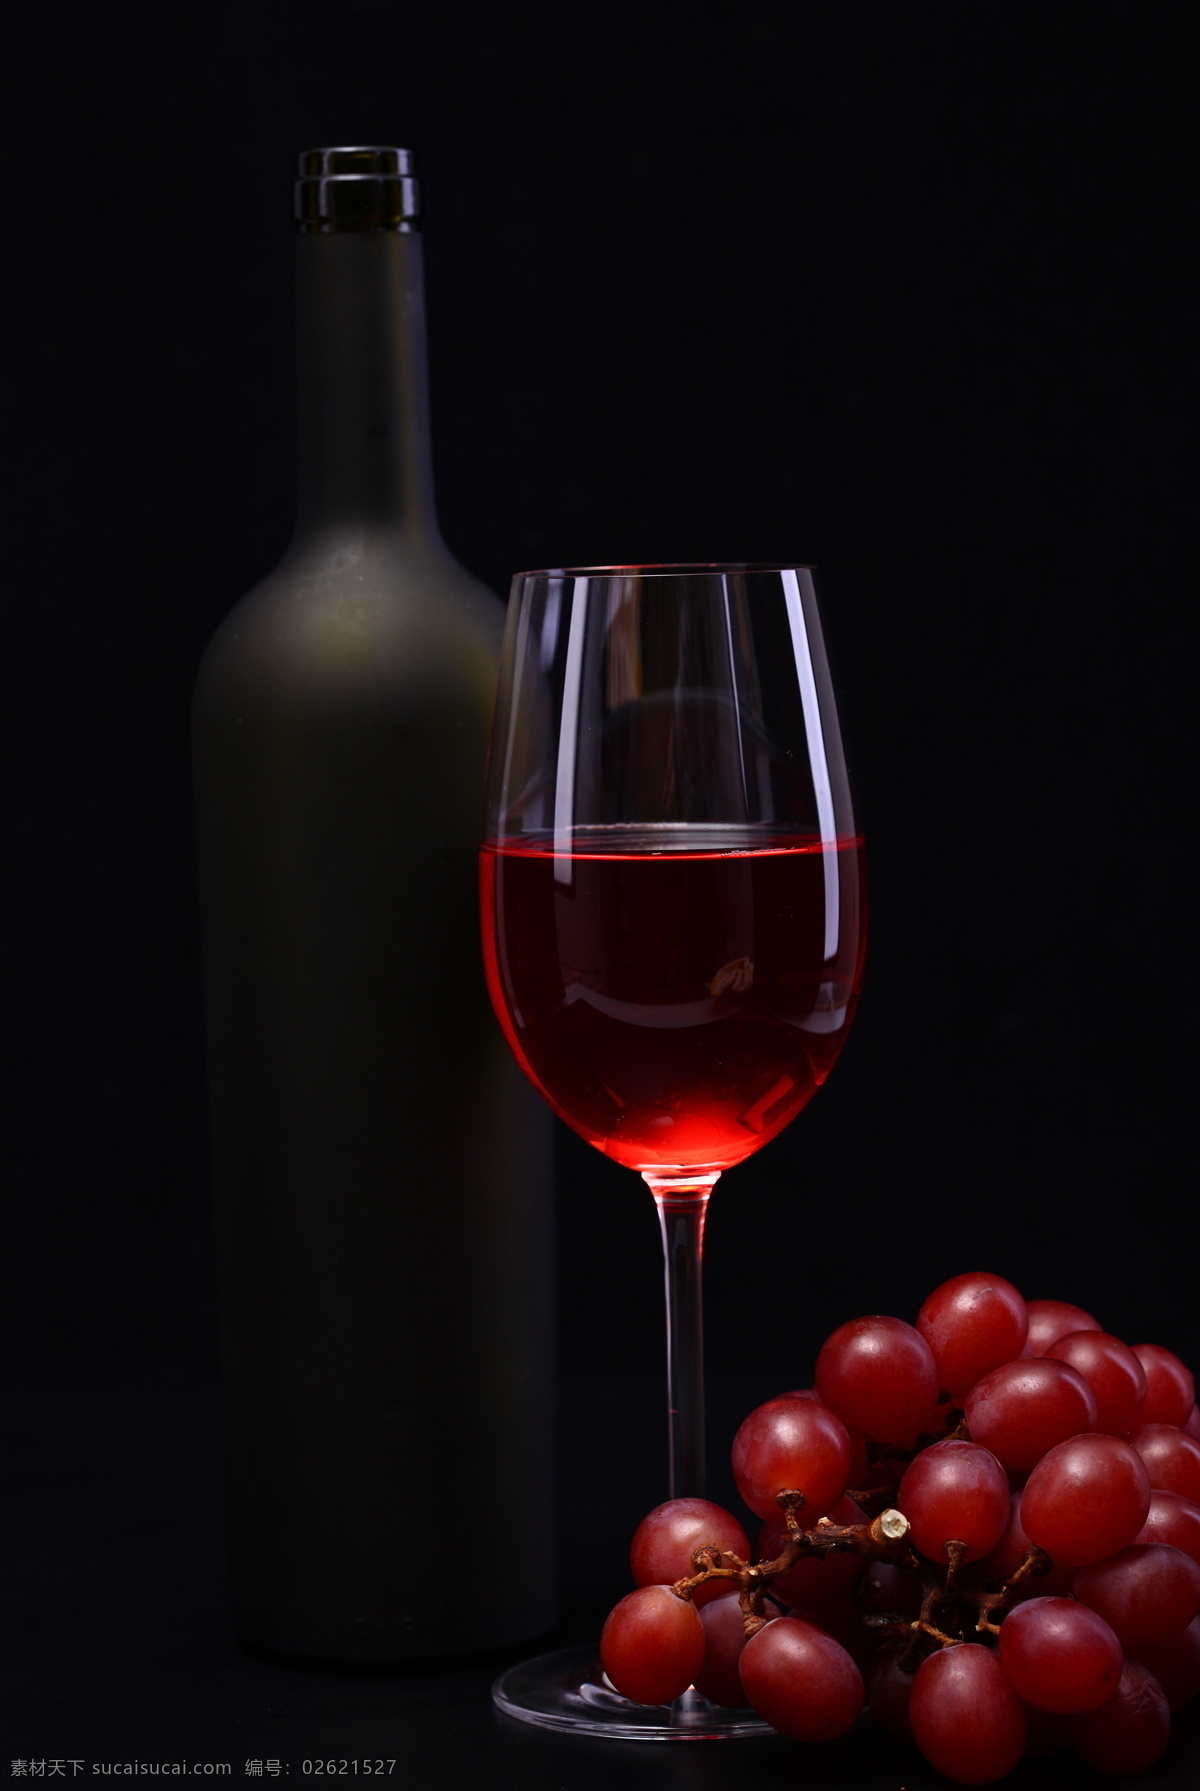 葡萄酒 红提 水果写真 水果图库 高清图片 水果 摄影图片 红酒 新鲜葡萄 玻璃杯 提子 酒类图片 餐饮美食